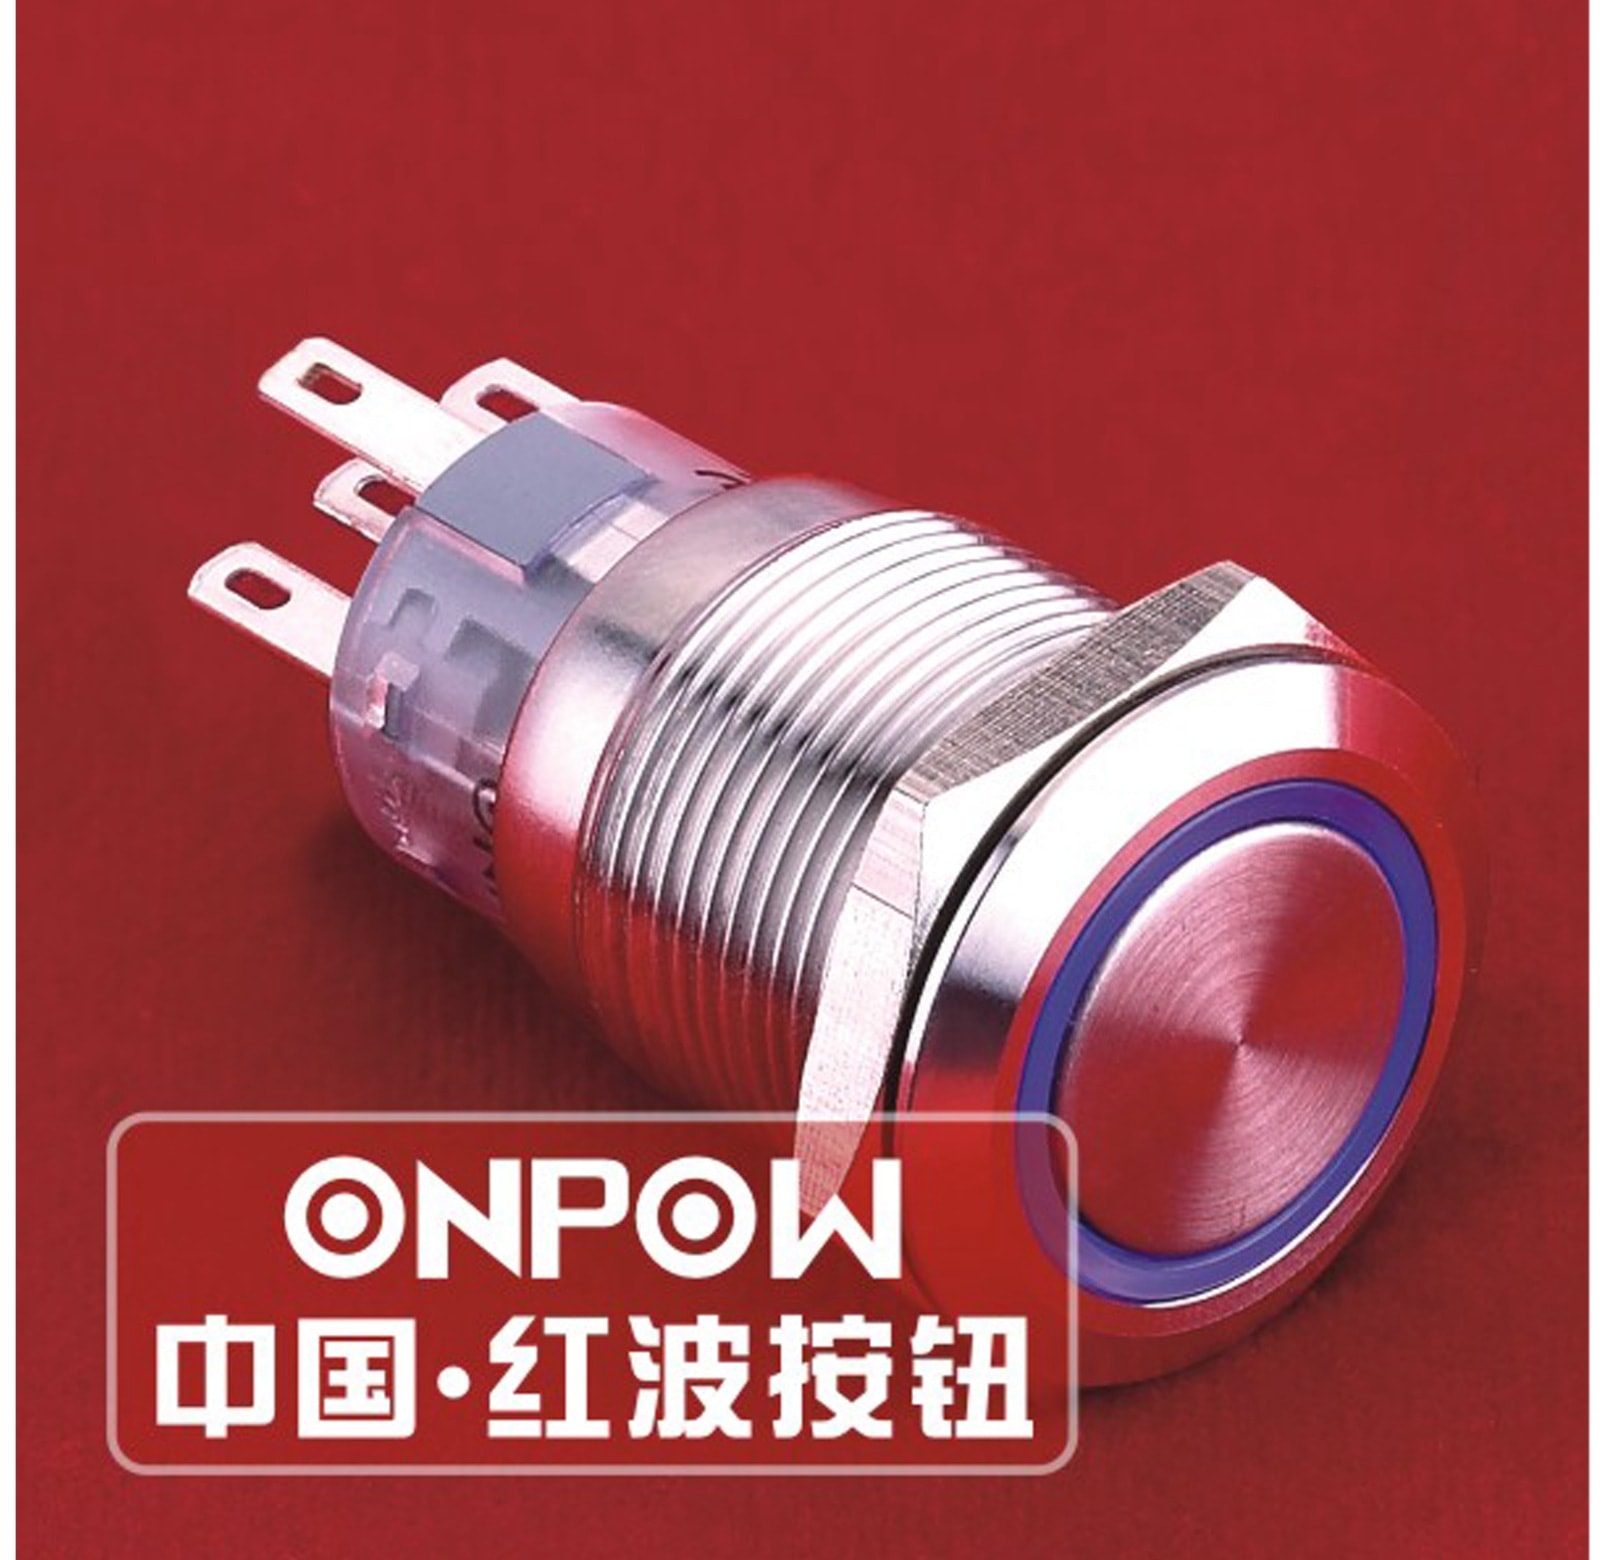 ONPOW Schalter, 24 V/DC, 1x Off/(On), Beleuchtung weiß, Lötanschluss, flach rund, Edelstahl, 19 mm